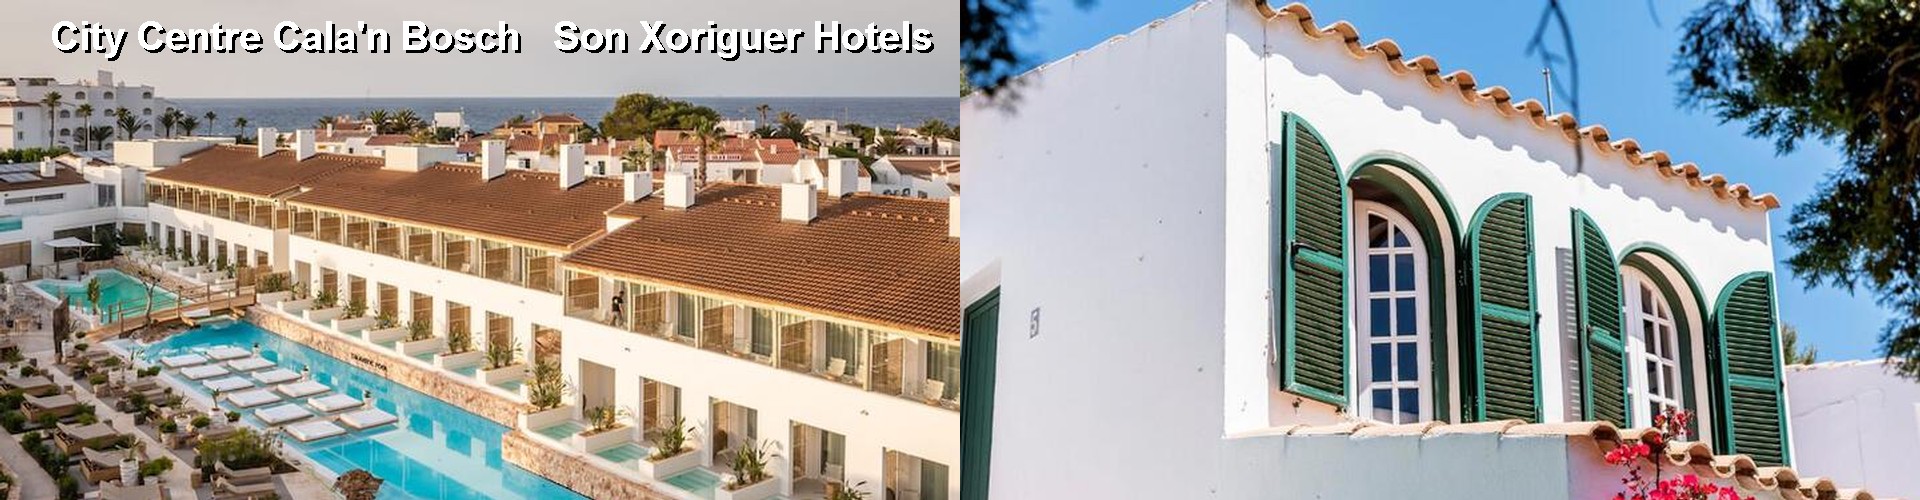 4 Best Hotels near City Centre Cala'n Bosch   Son Xoriguer